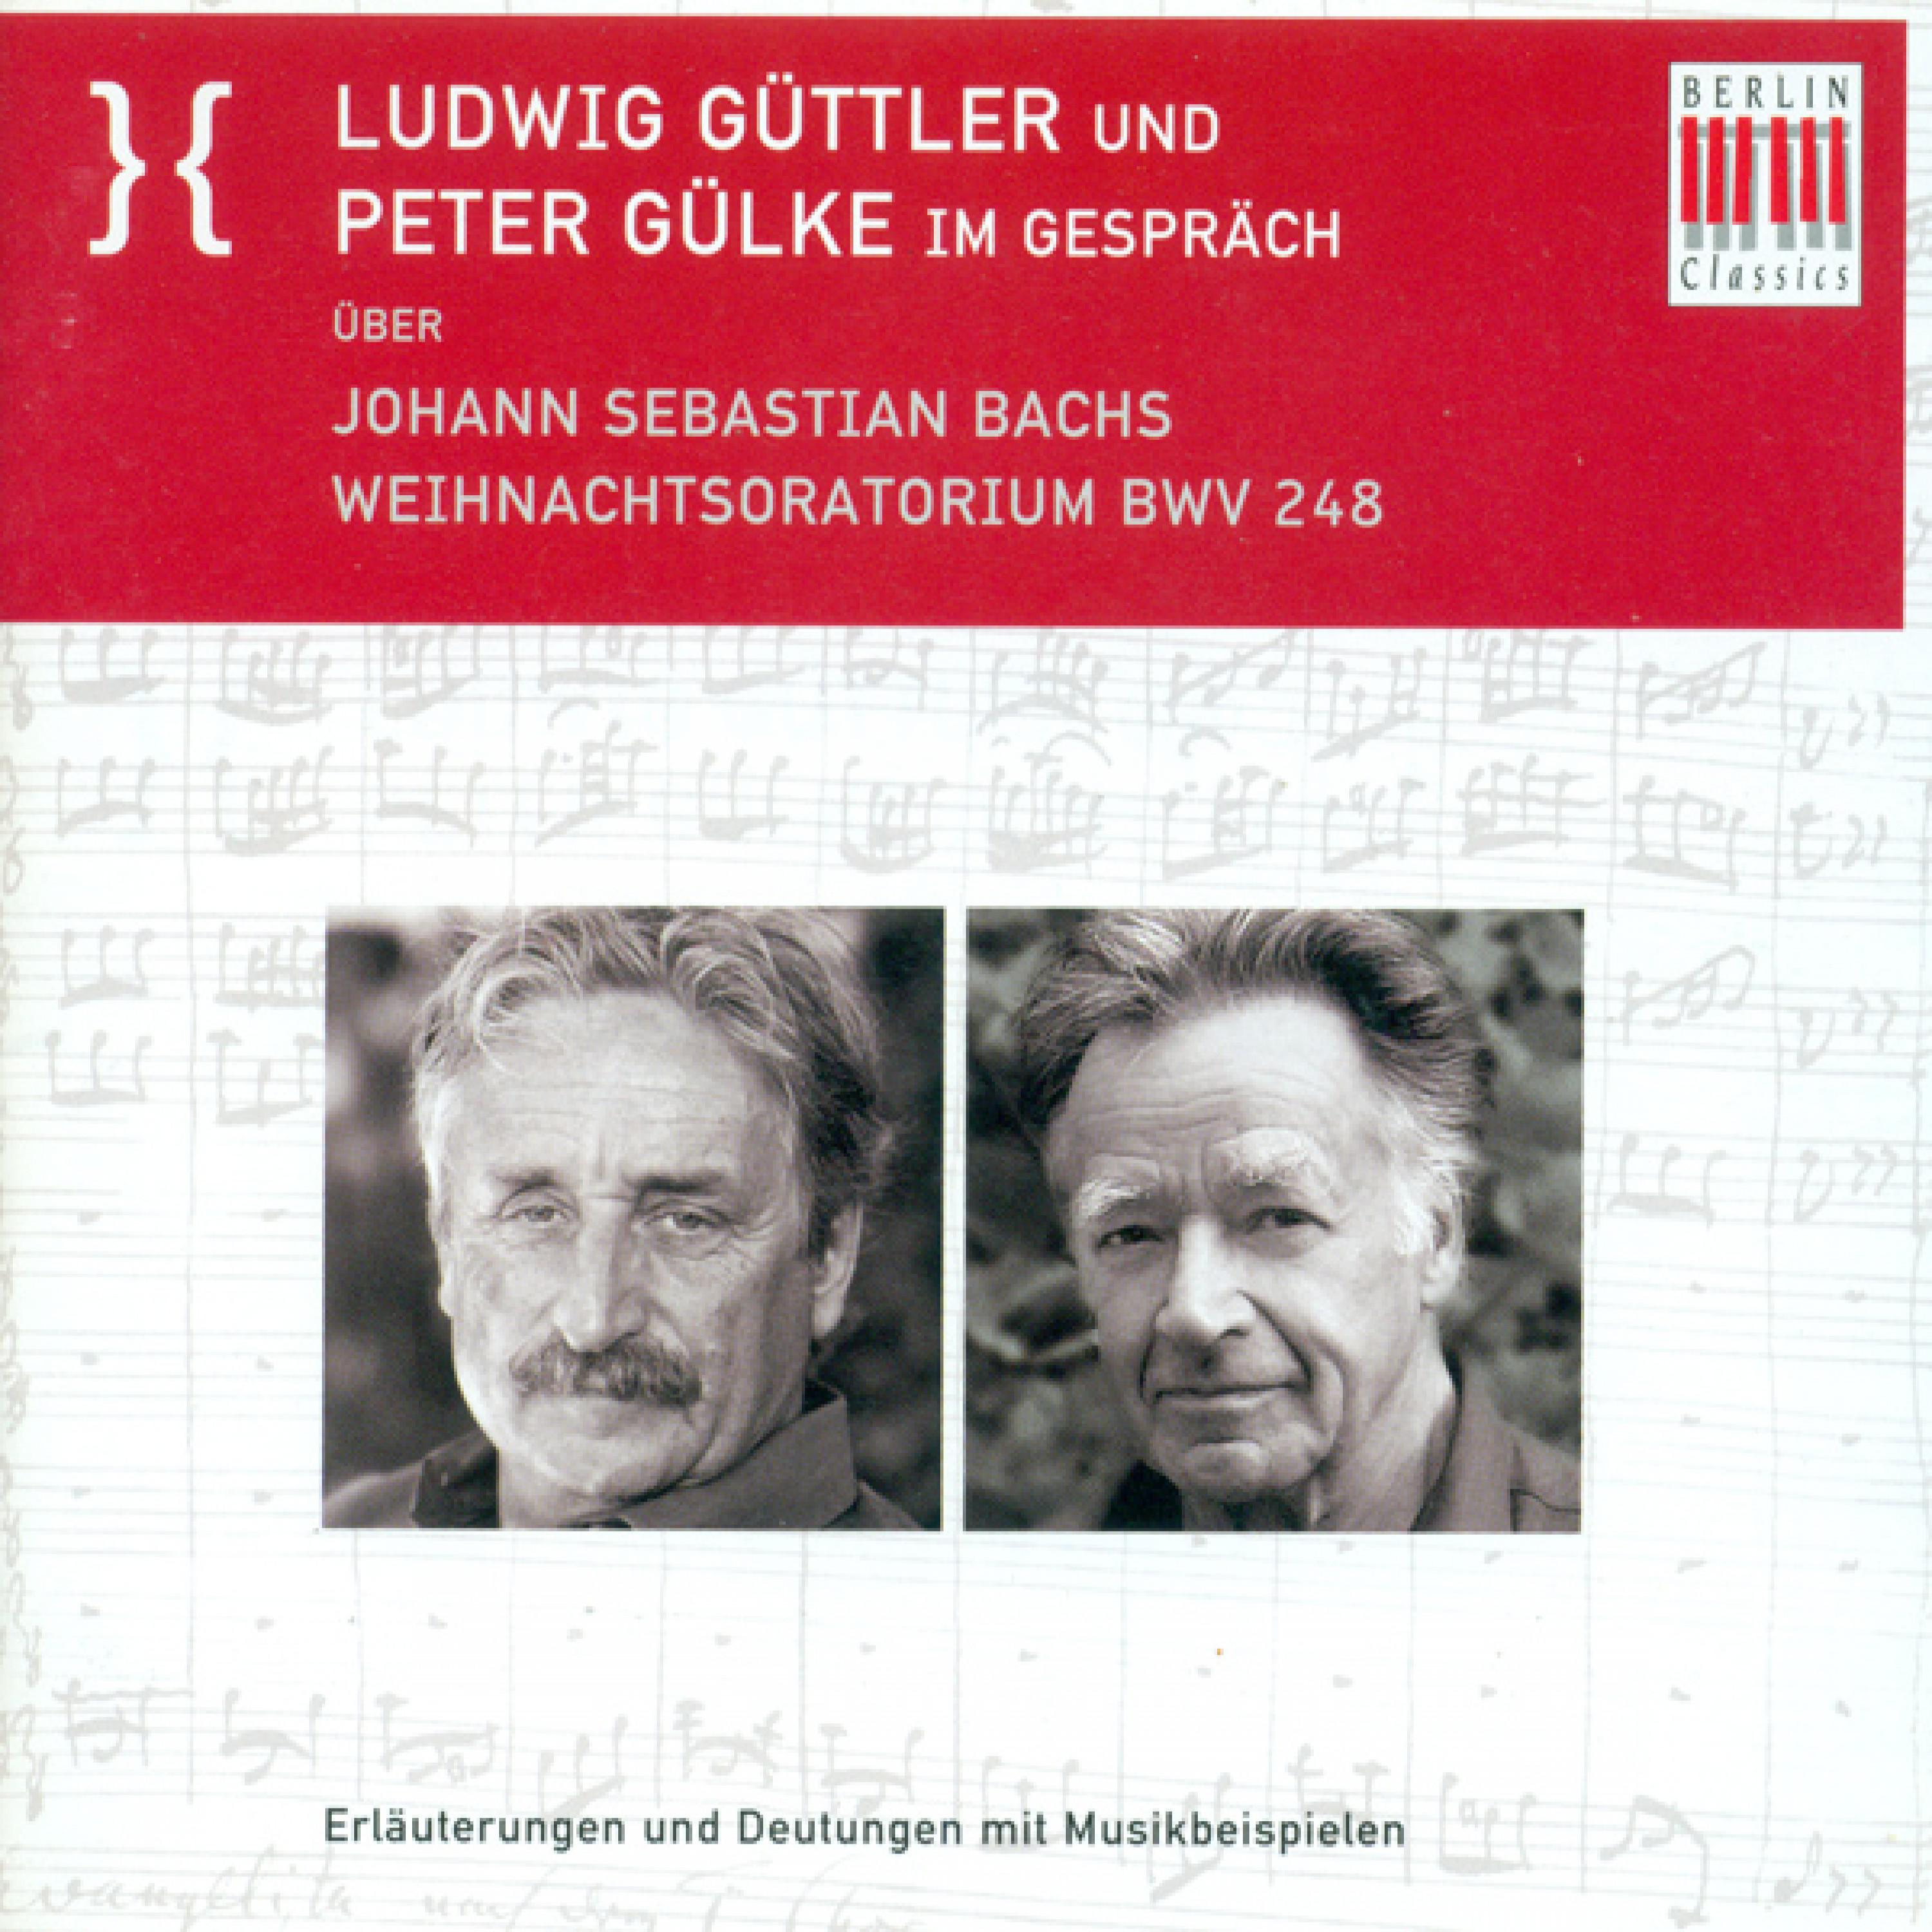 Ludwig Guttler und Peter Gulke Im Gesprach uber Johann Sebastian Bach's Weihnachtsoratorium BWV 248: Die Handlungsebenen